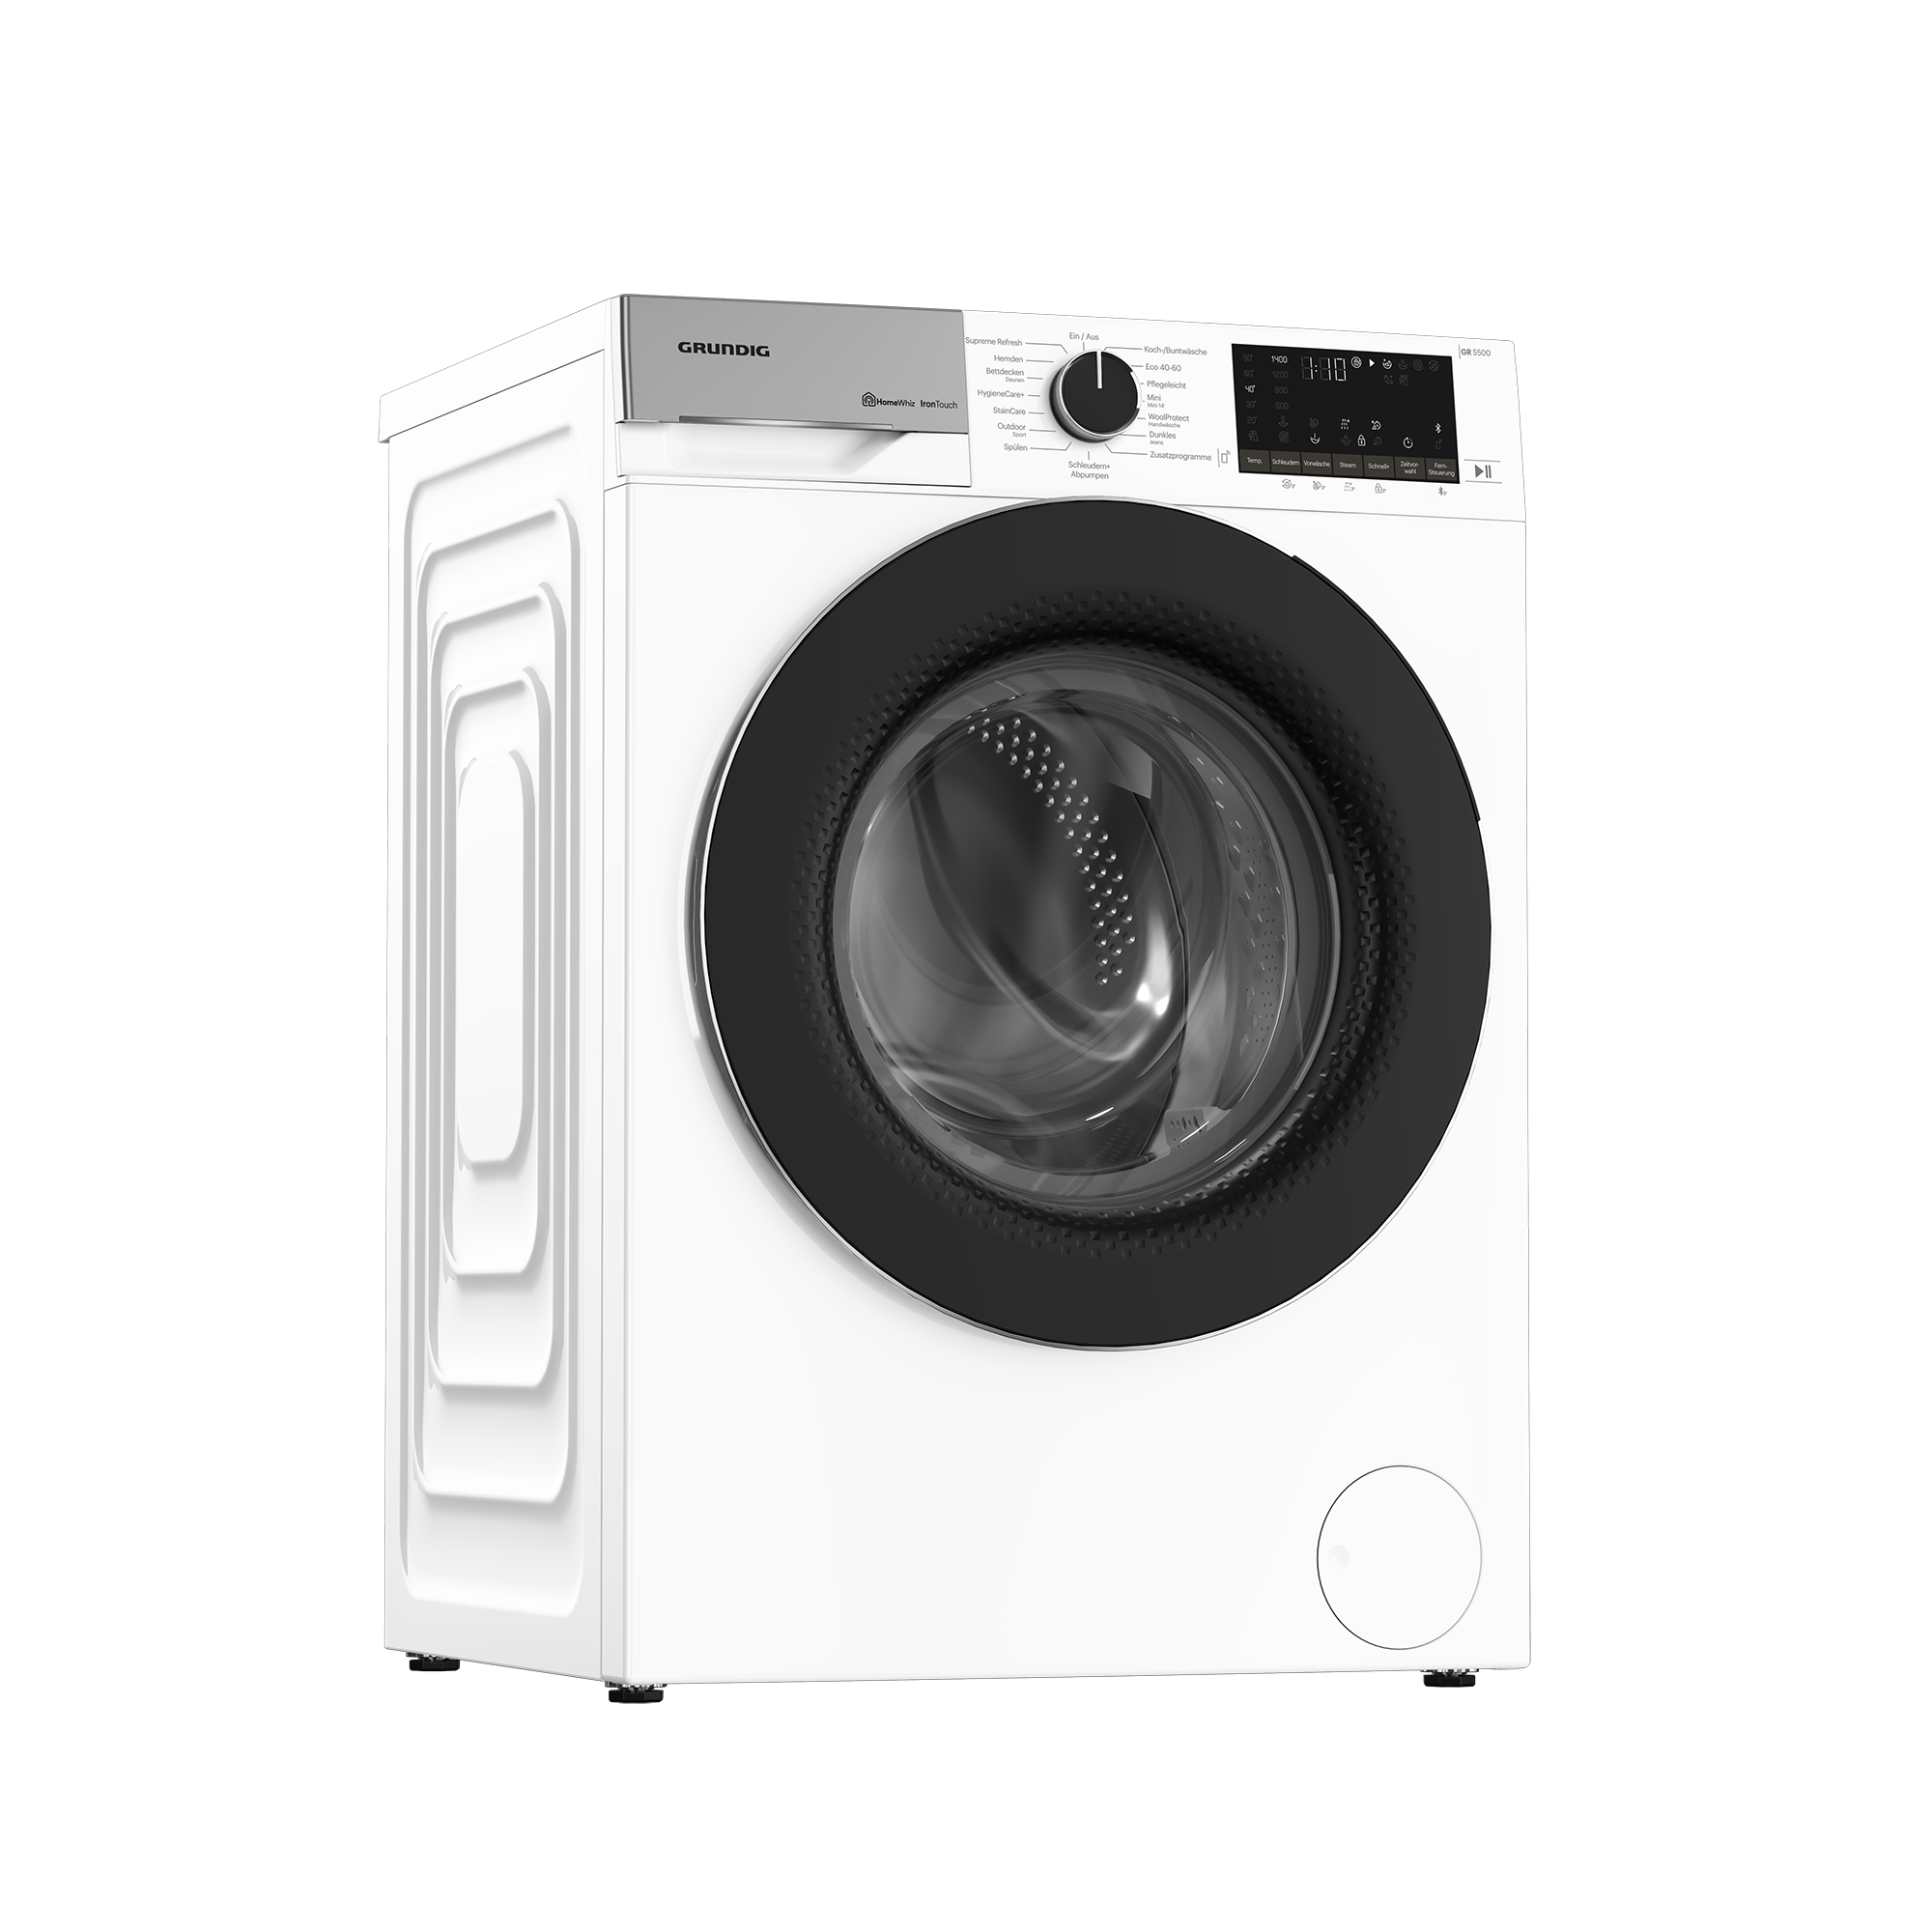 GW5P59415W2 - Waschmaschine - jetzt Grundig & | Trocknen | Waschen kaufen